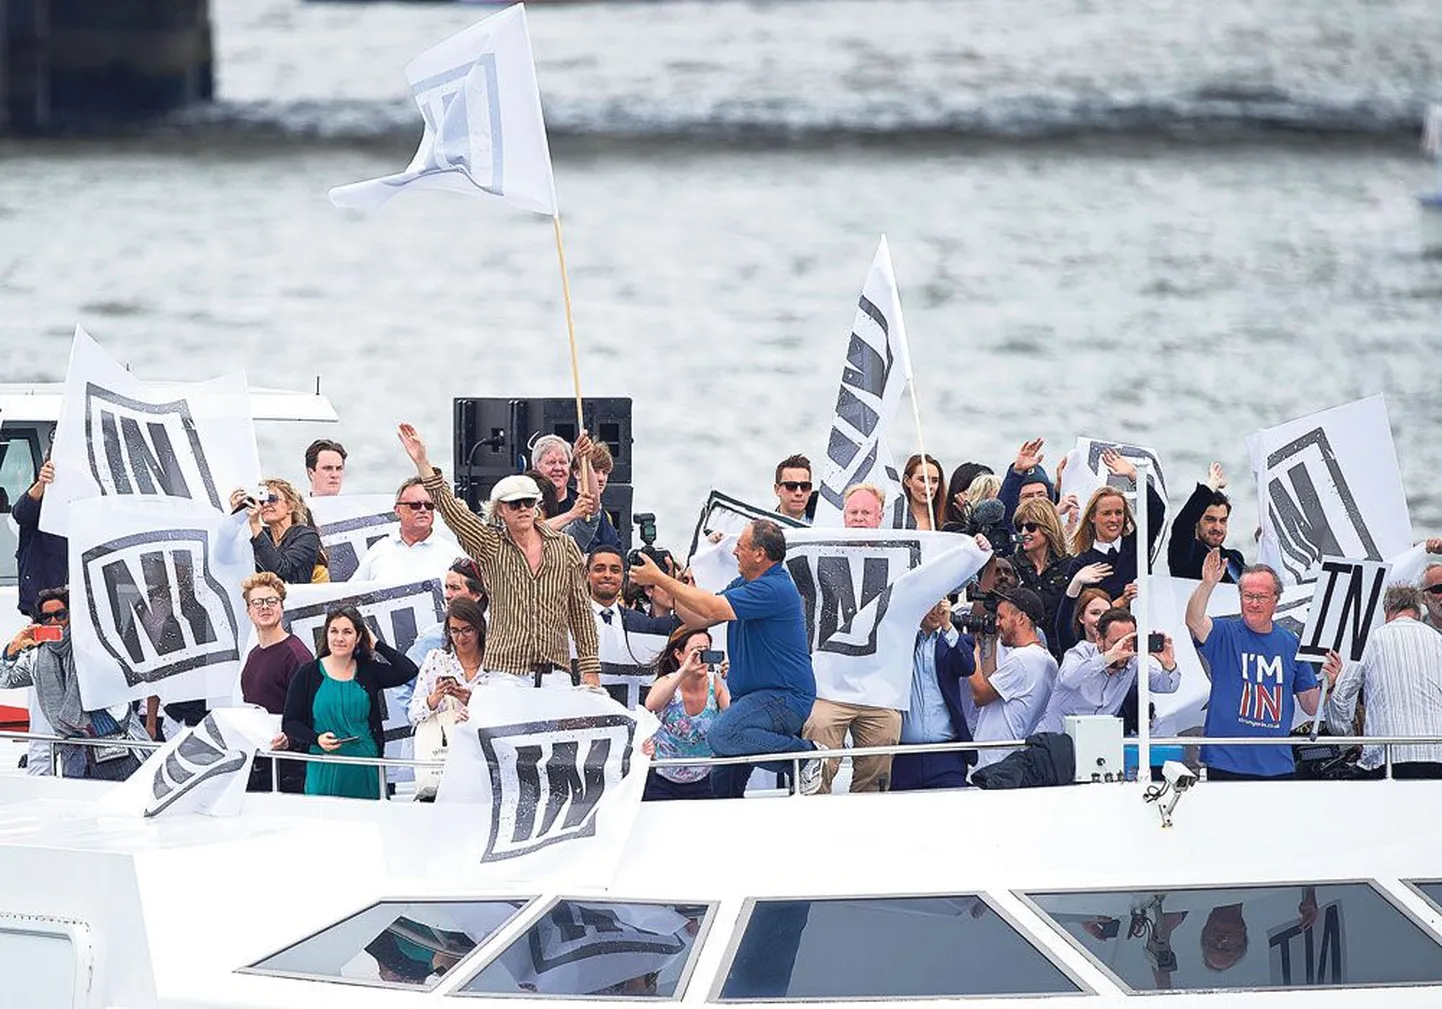 Перед проведением референдума в Великобритании обе стороны проводят активную агитацию. На снимке сторонники ЕС плывут на теплоходе по Темзе в центре Лондона и размахивают флагами, которые призывают голосовать за сохранение членства в Евросоюзе, в центре ирландский музыкант Боб Гелдоф.